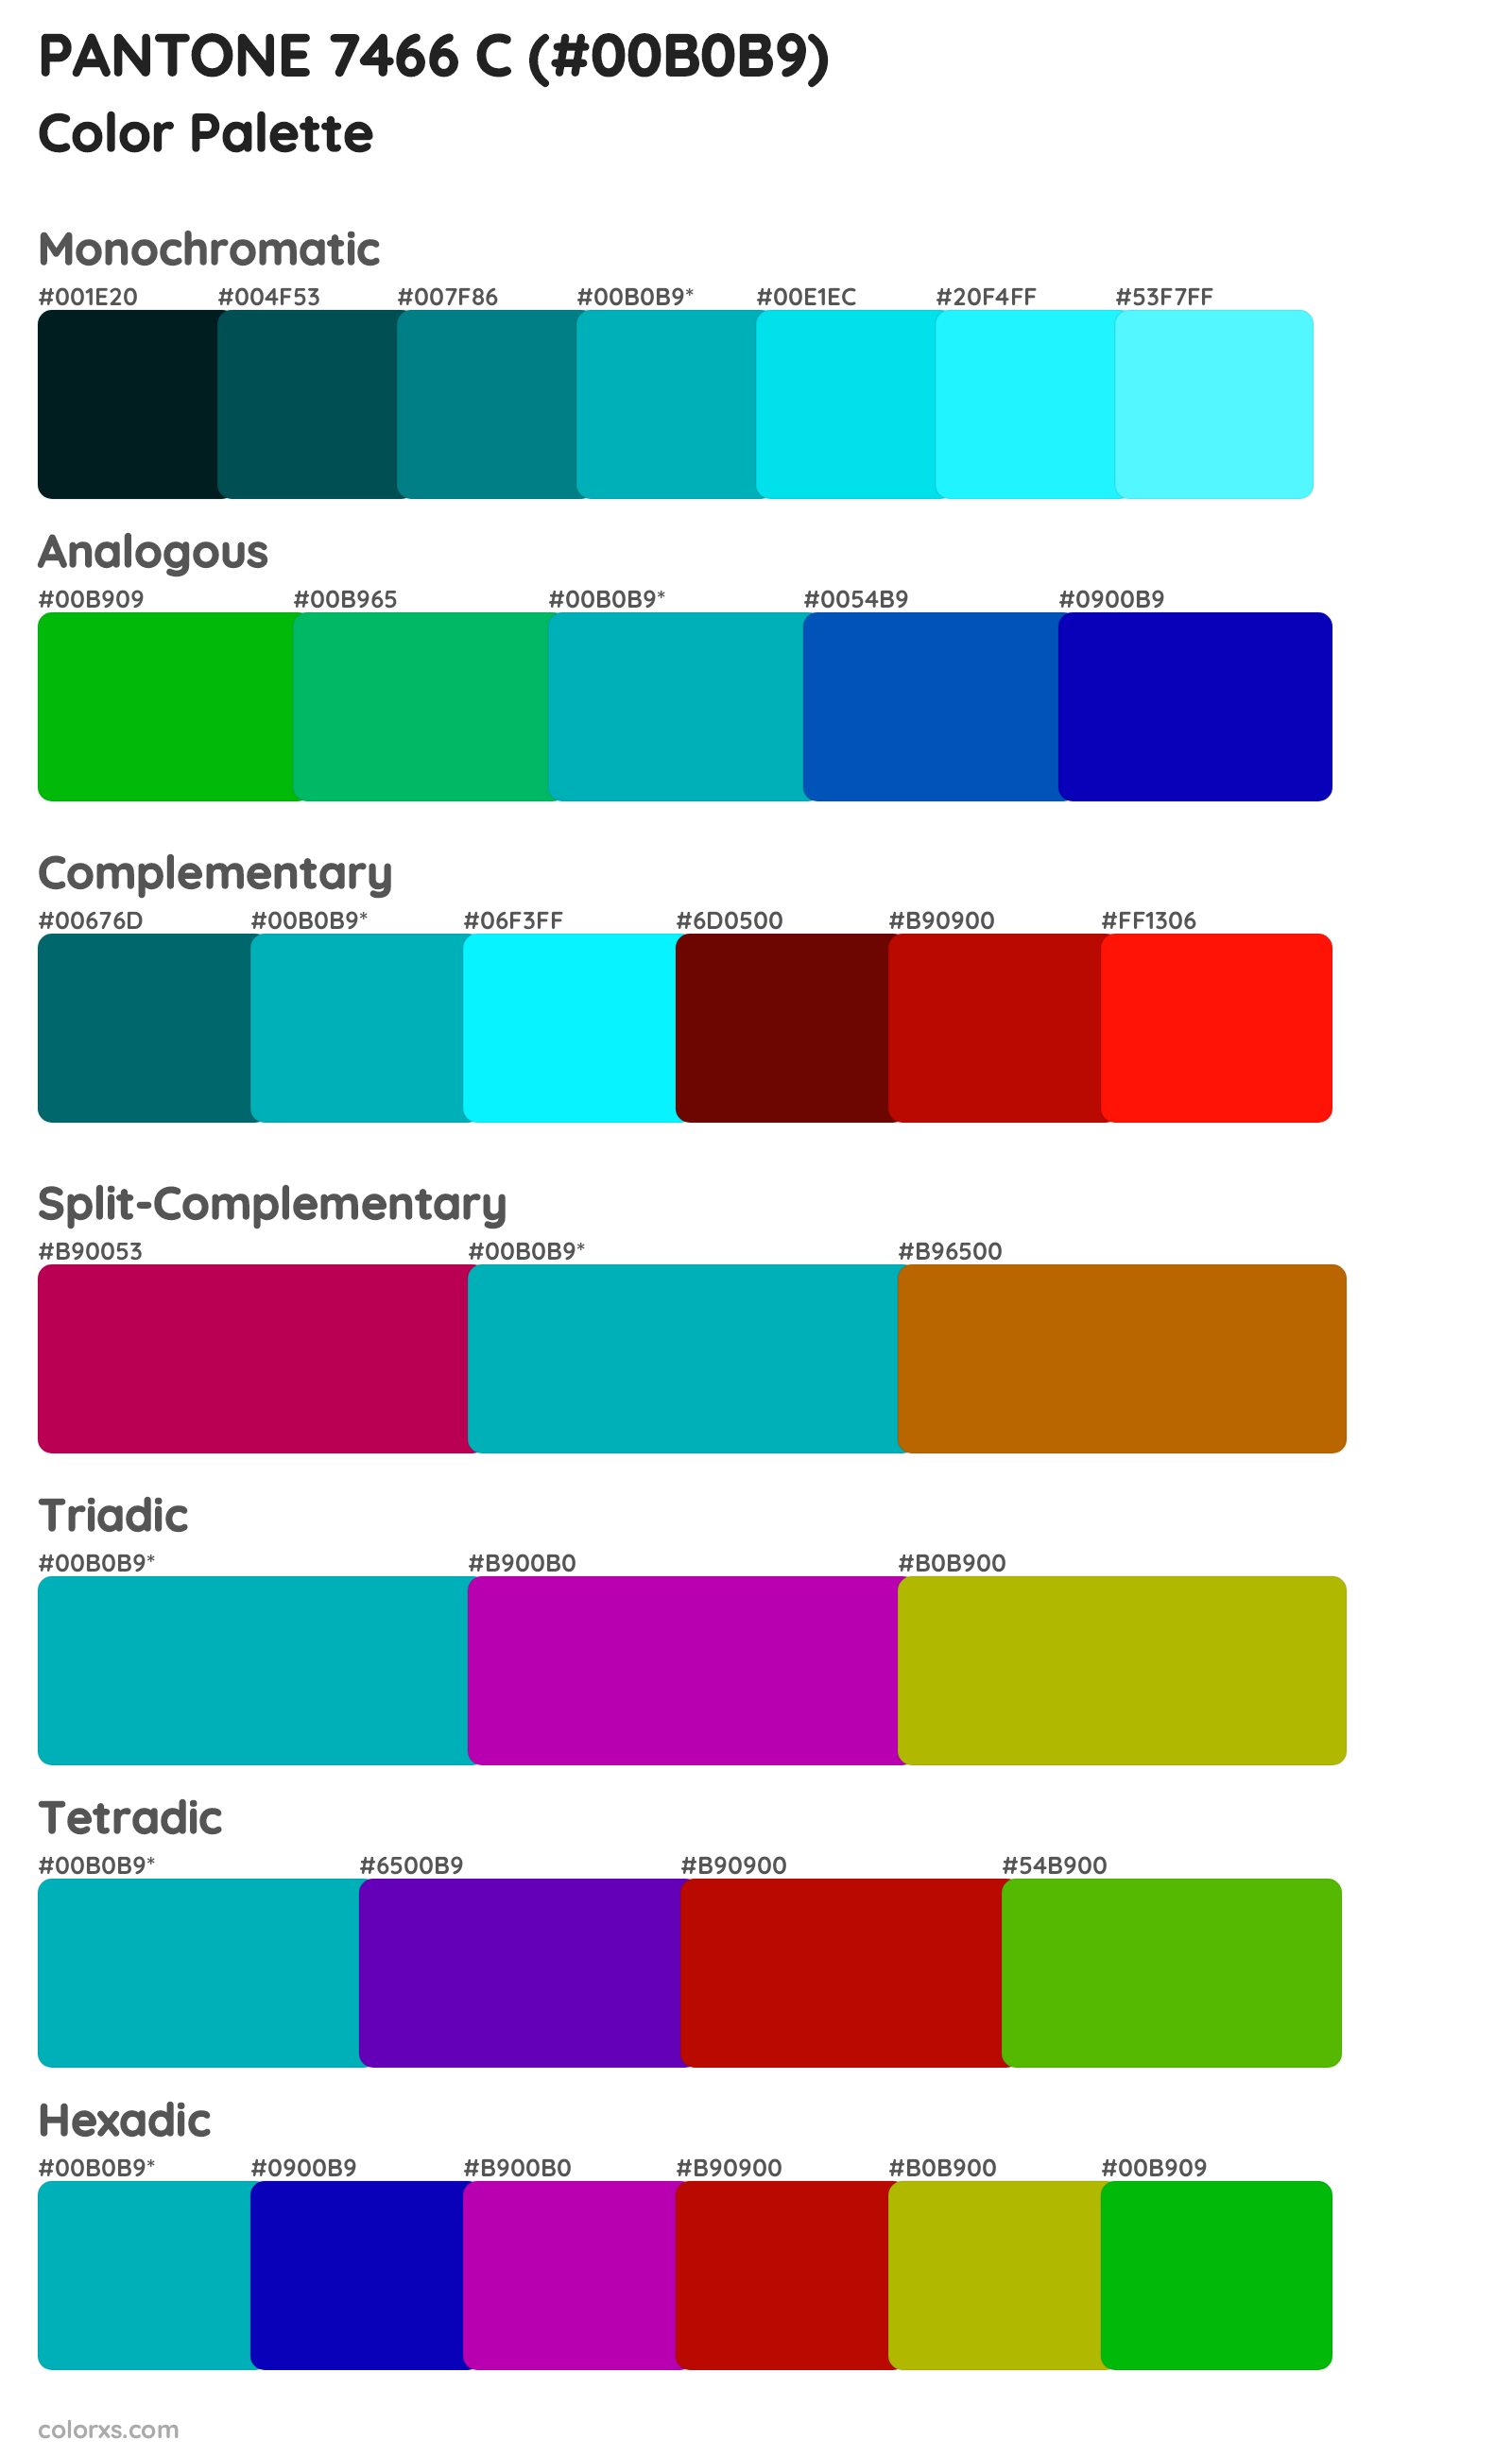 PANTONE 7466 C Color Scheme Palettes